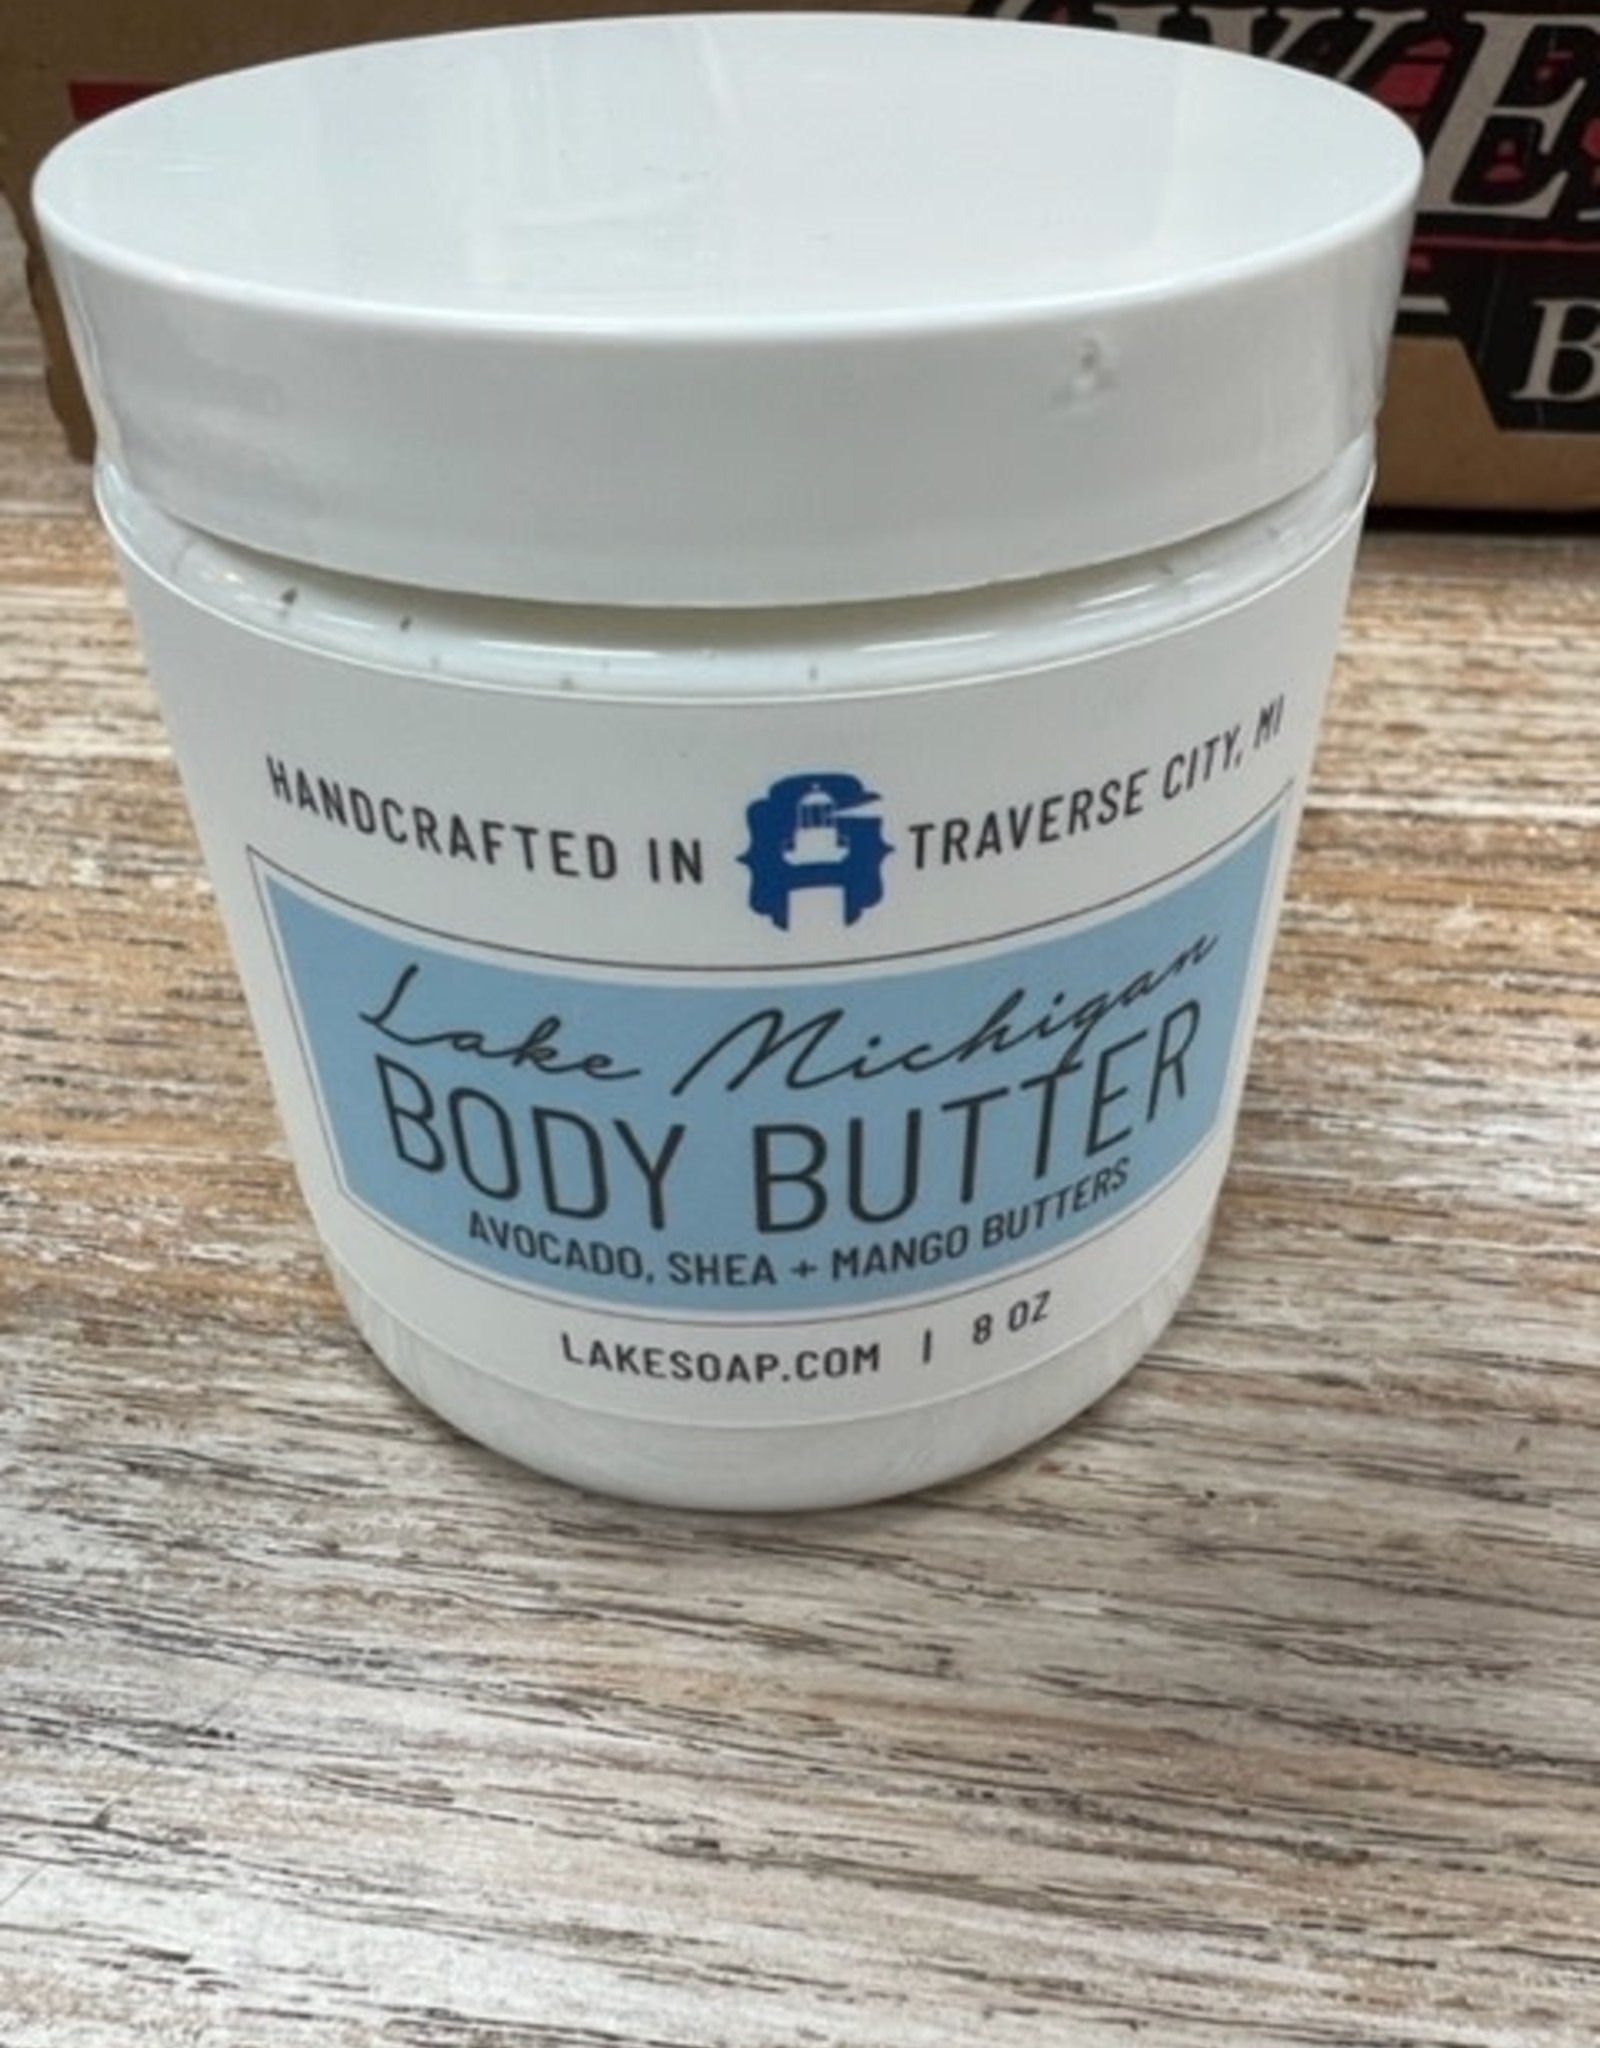 Beauty Lake Soap, Lake Michigan Body Butter